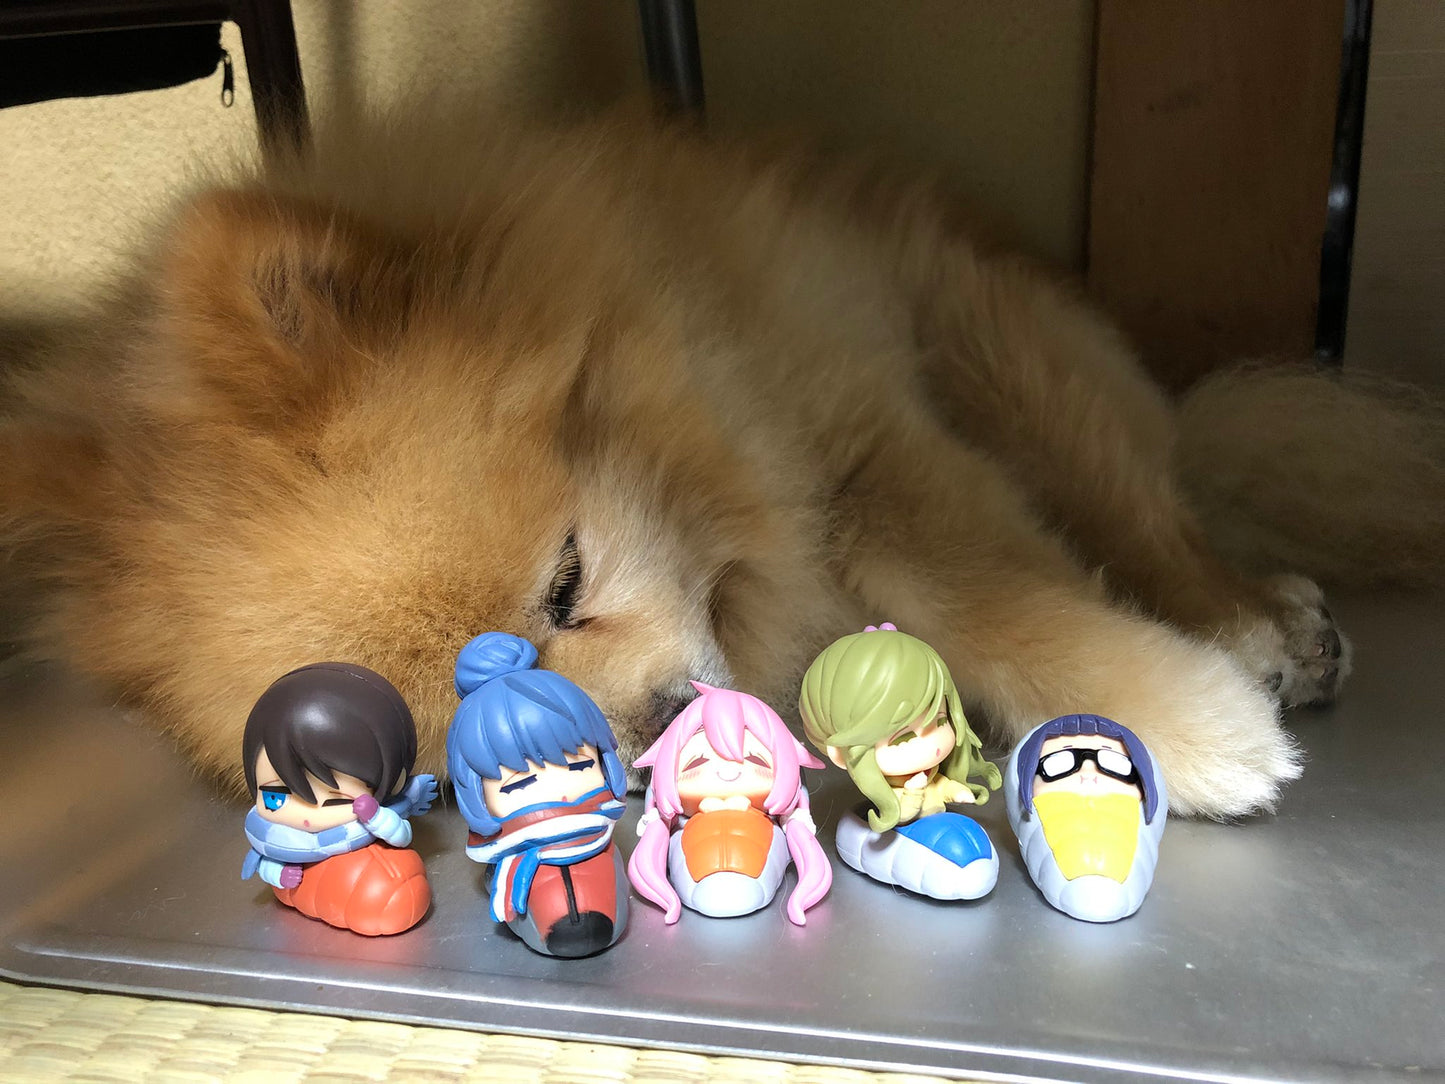 Yuru Camp Mini Sleeping Figures